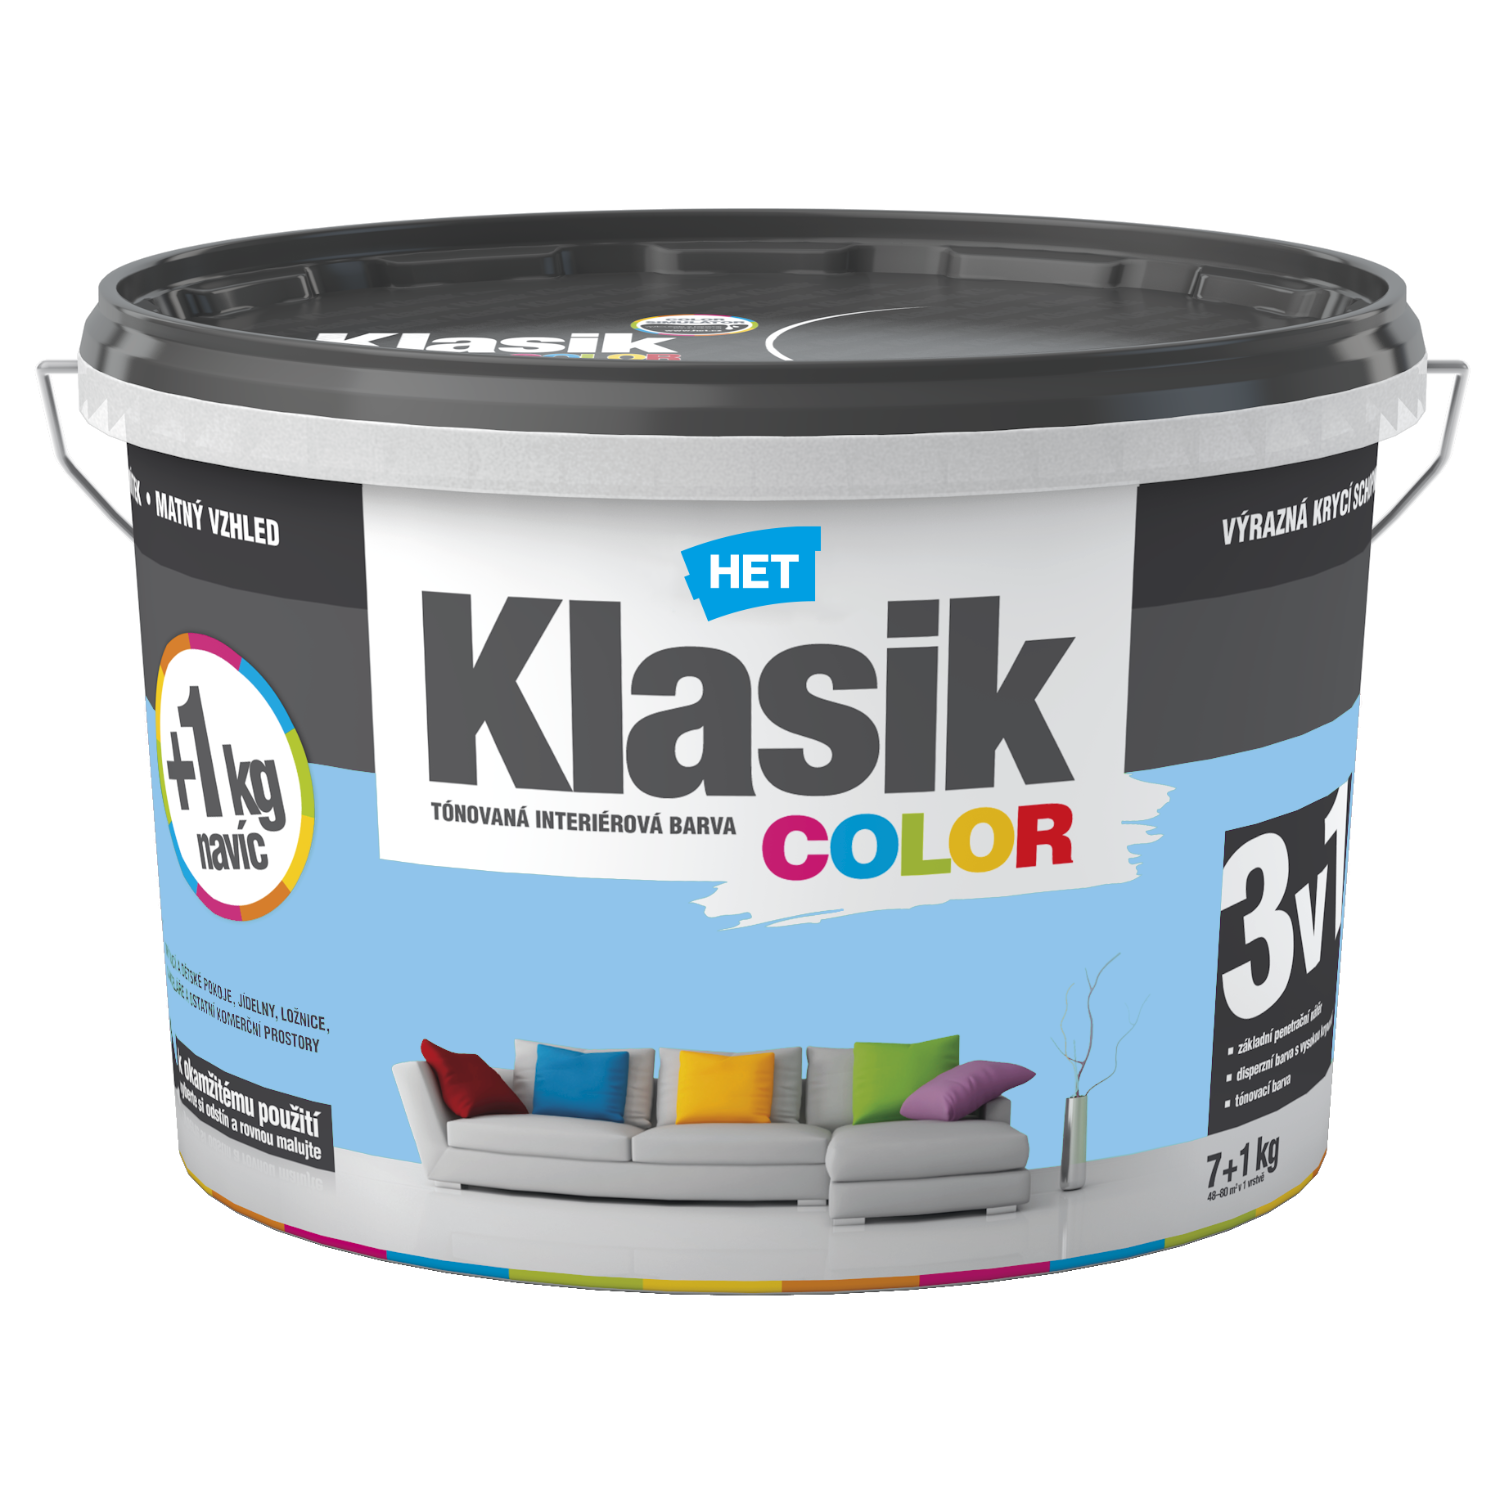 HET Klasik COLOR tónovaná interiérová akrylátová disperzná oteruvzdorná farba 7 kg + 1 kg zdarma, KC0407 - modrý blankytný